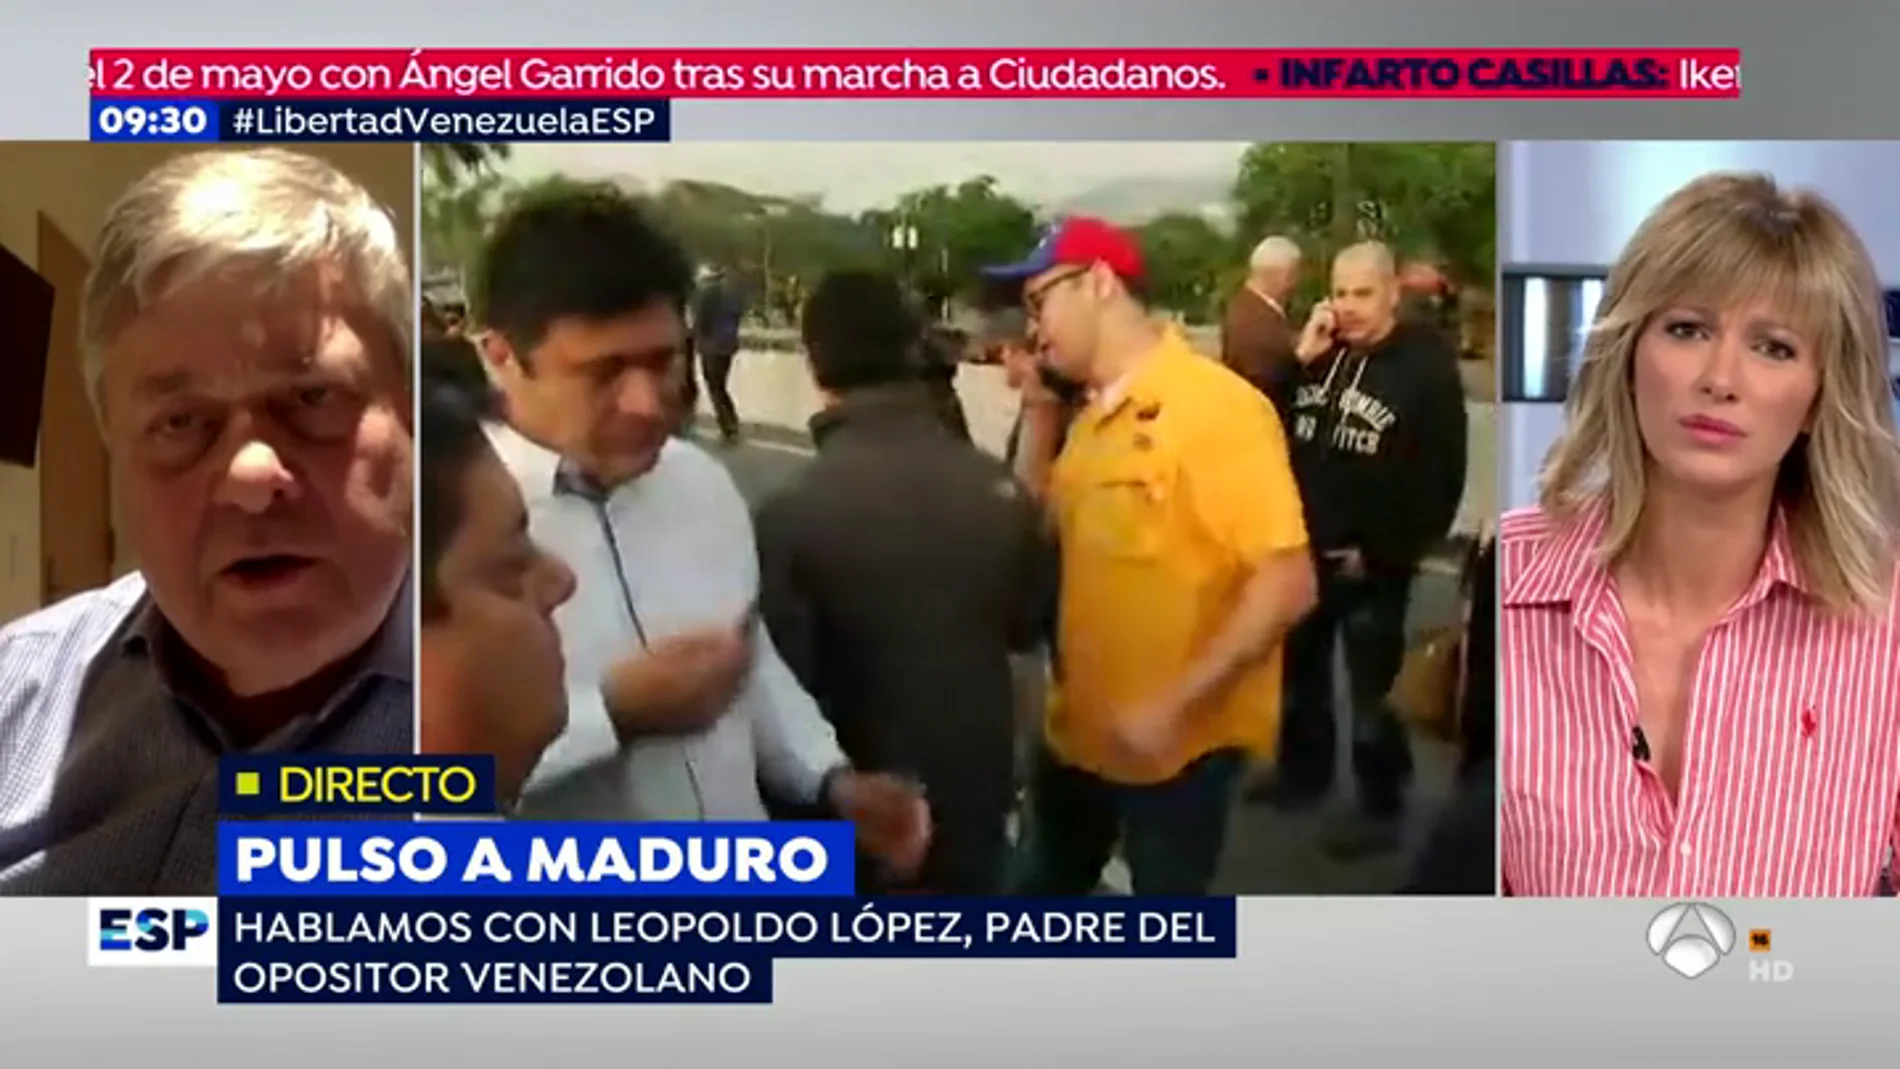 Leopoldo López, padre del opositor venezolano: "El único error que ha cometido alguien ha sido el pueblo español reconociéndole algún liderazgo al señor Iglesias"